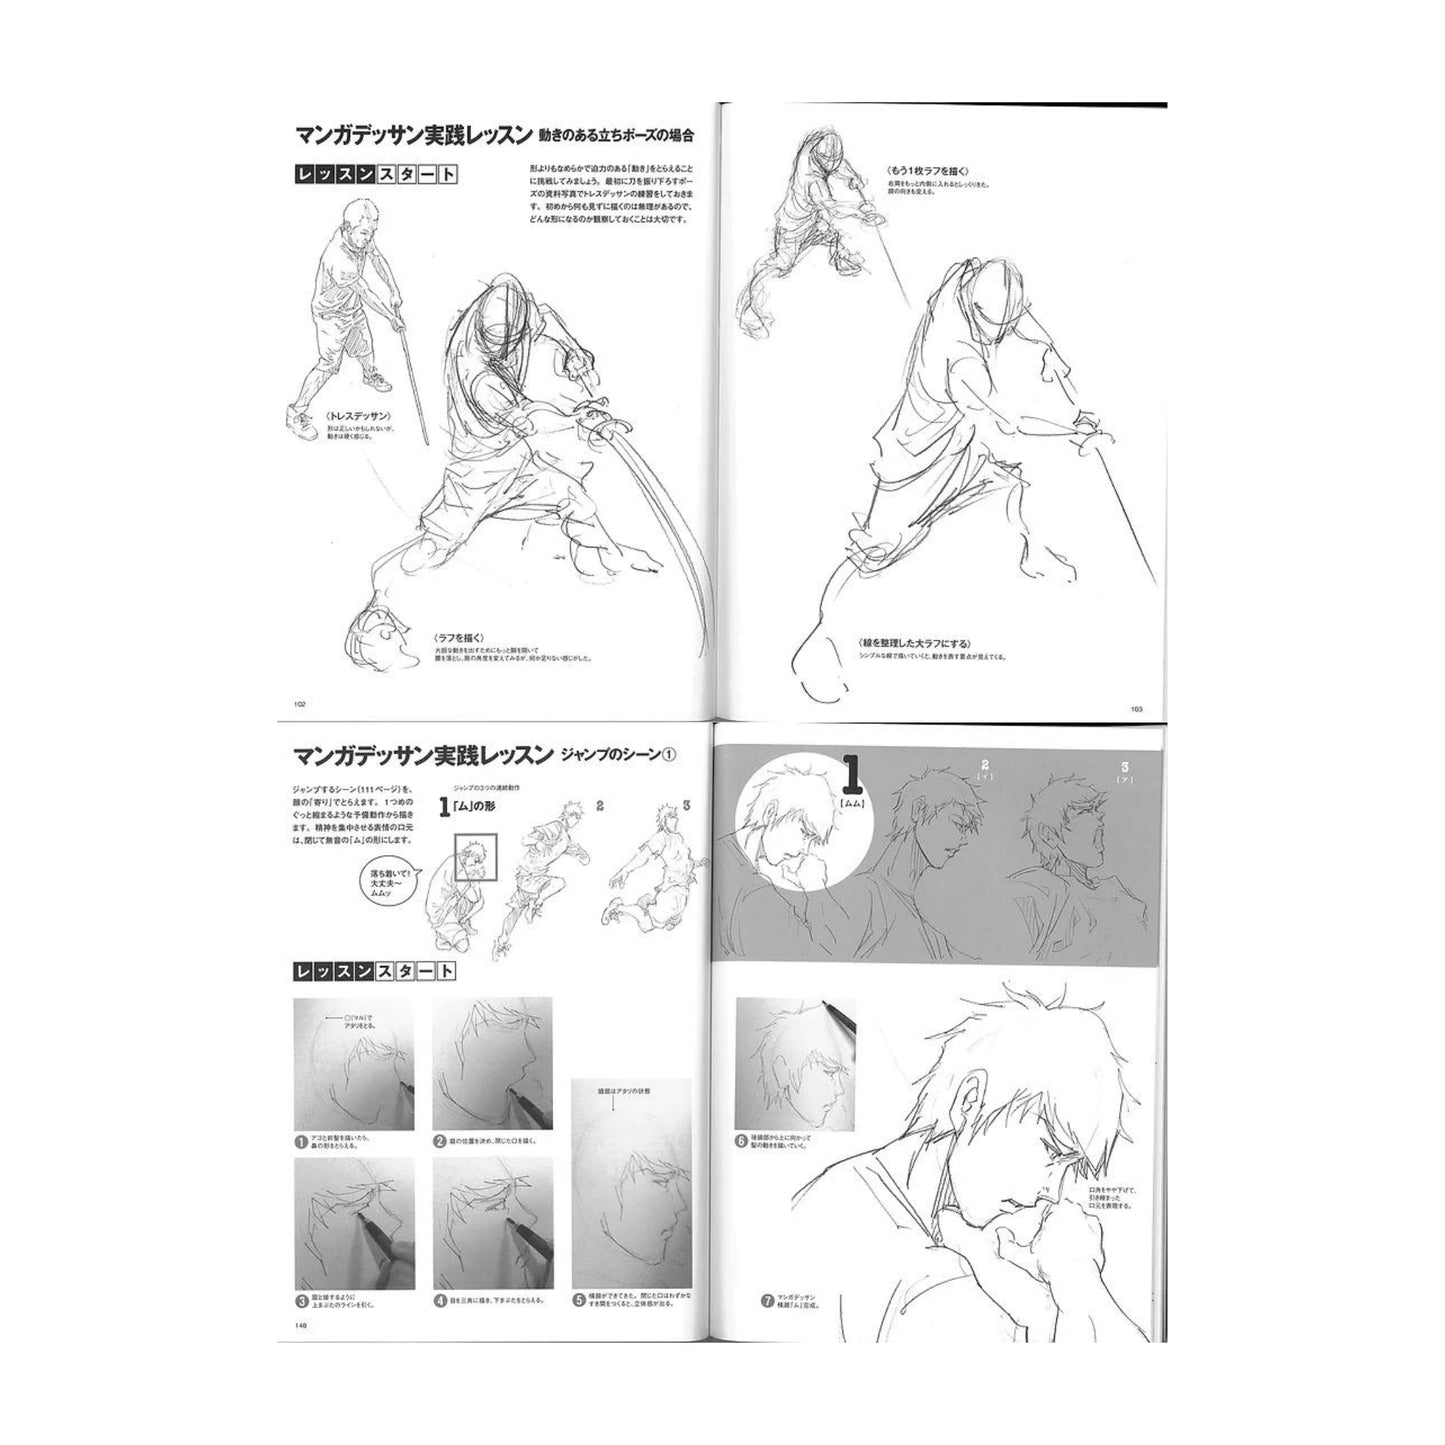 How to draw - jap. Zeichenbuch - Dynamik bei männlichen Charakteren